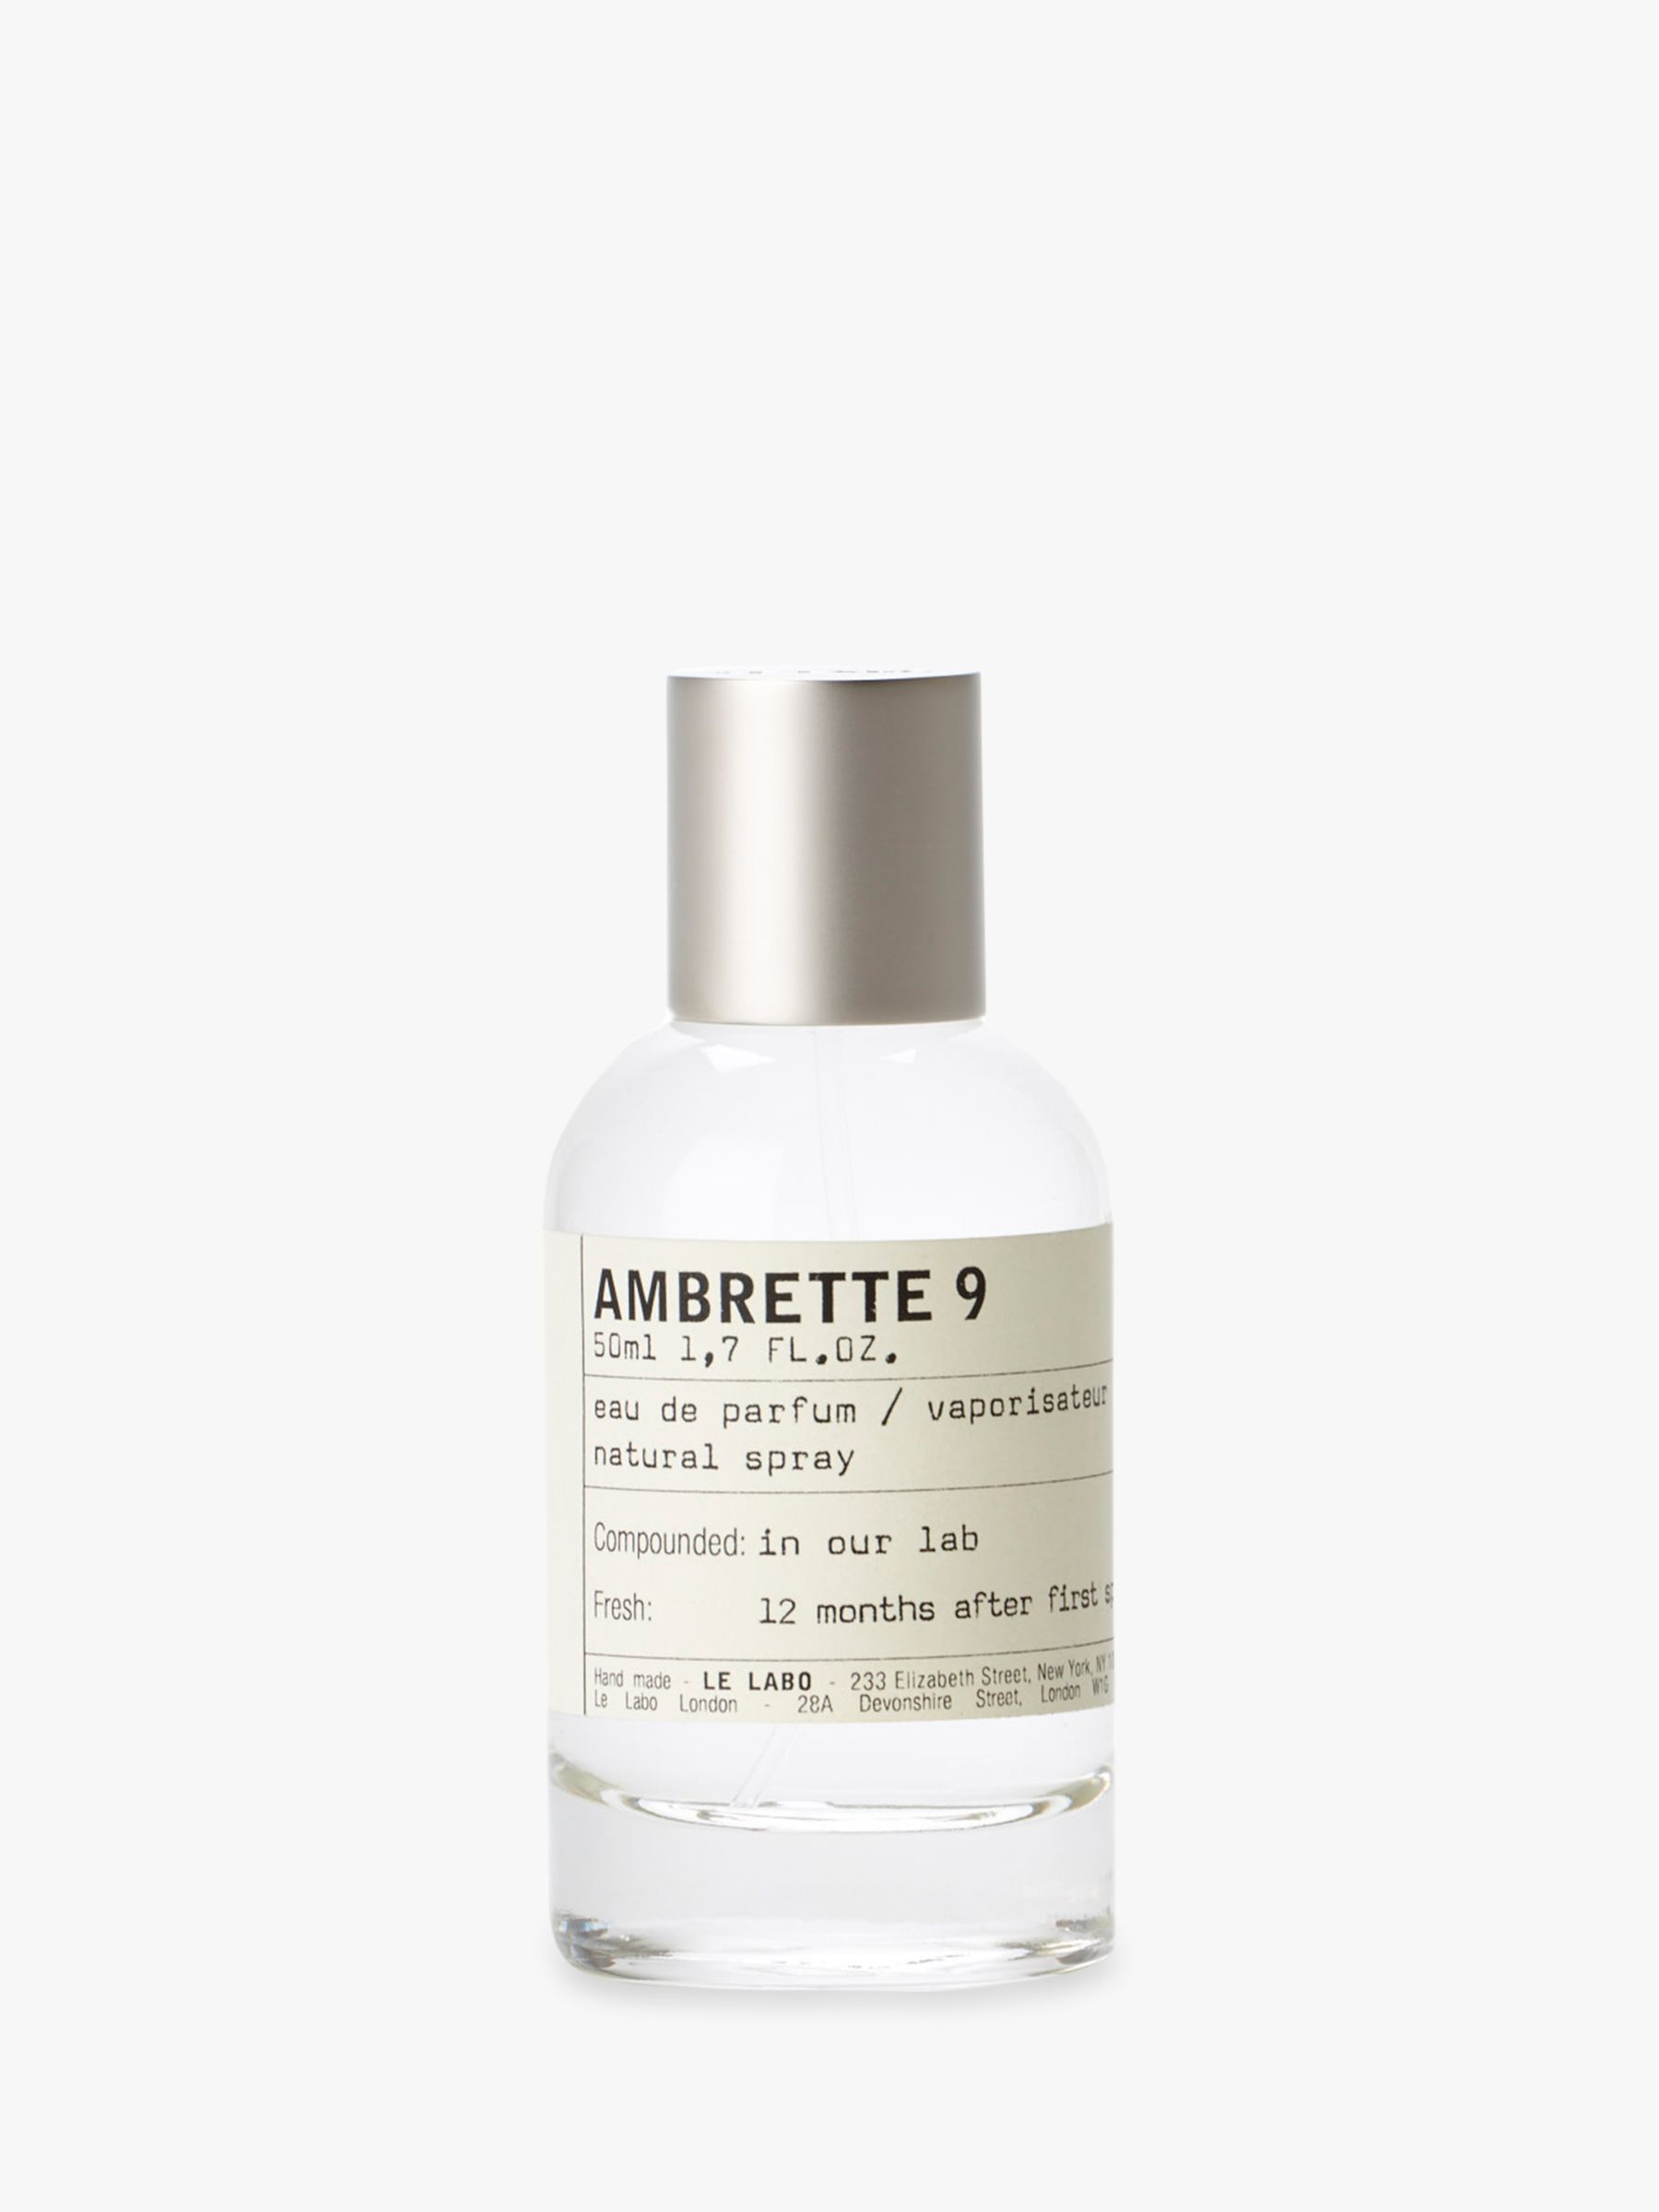 Le Labo Ambrette 9 Eau de Parfum, 50ml at John Lewis & Partners